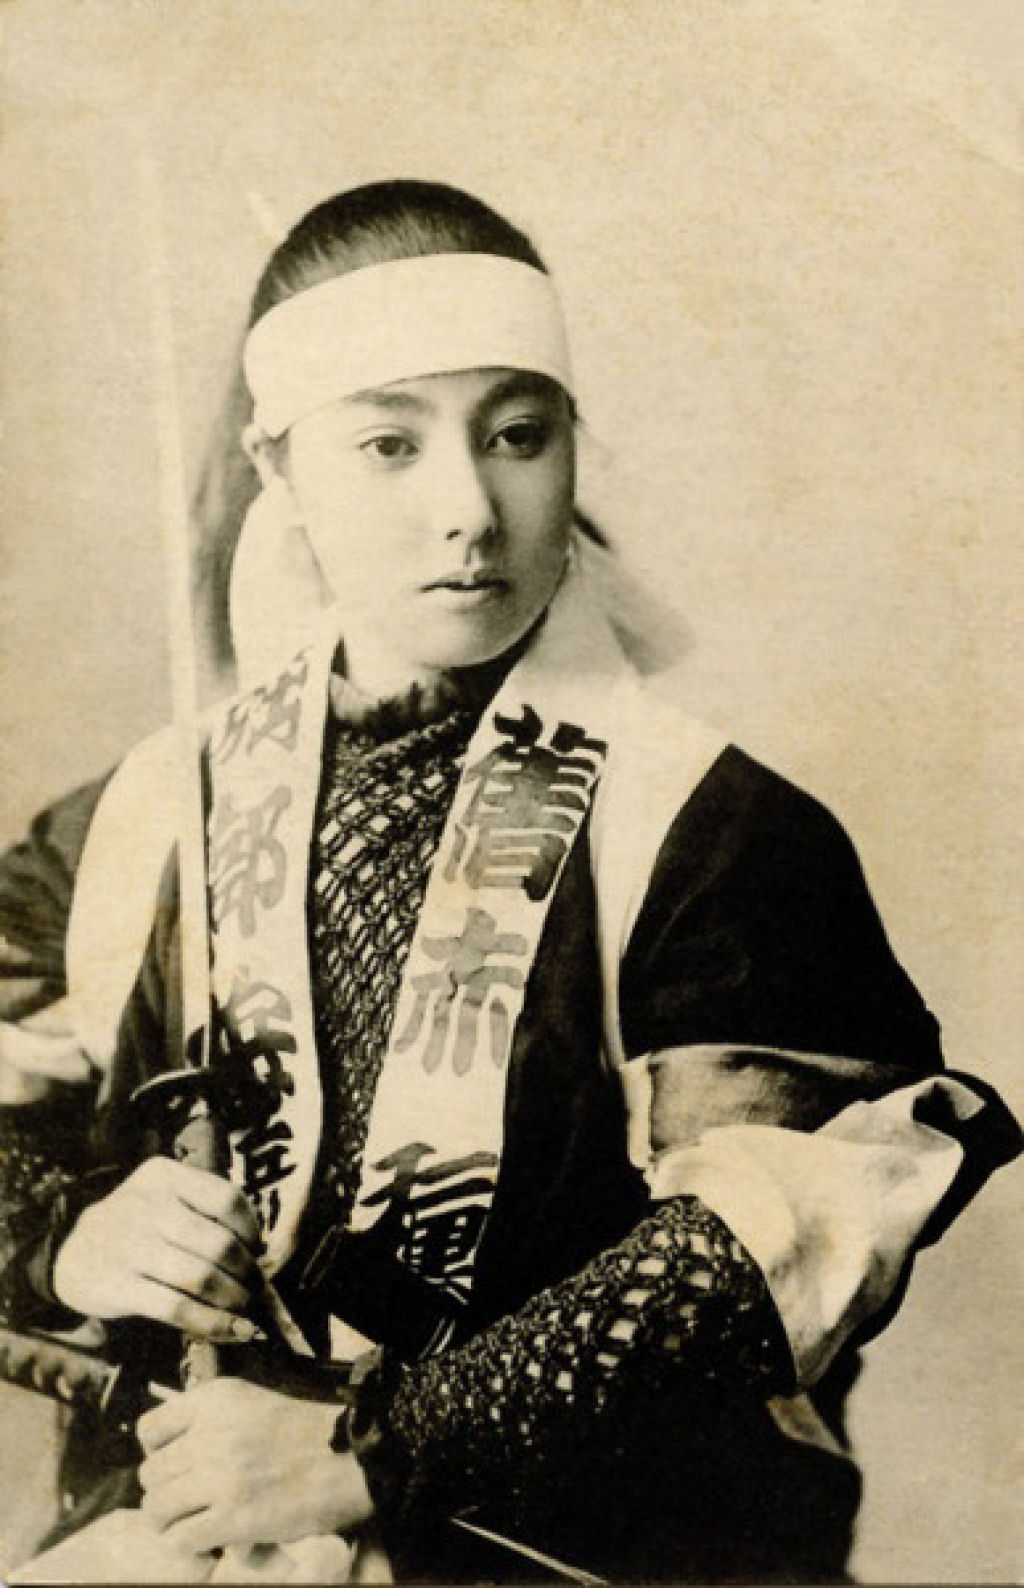 Fotos antigas de guerreiras samurais posando com suas katanas